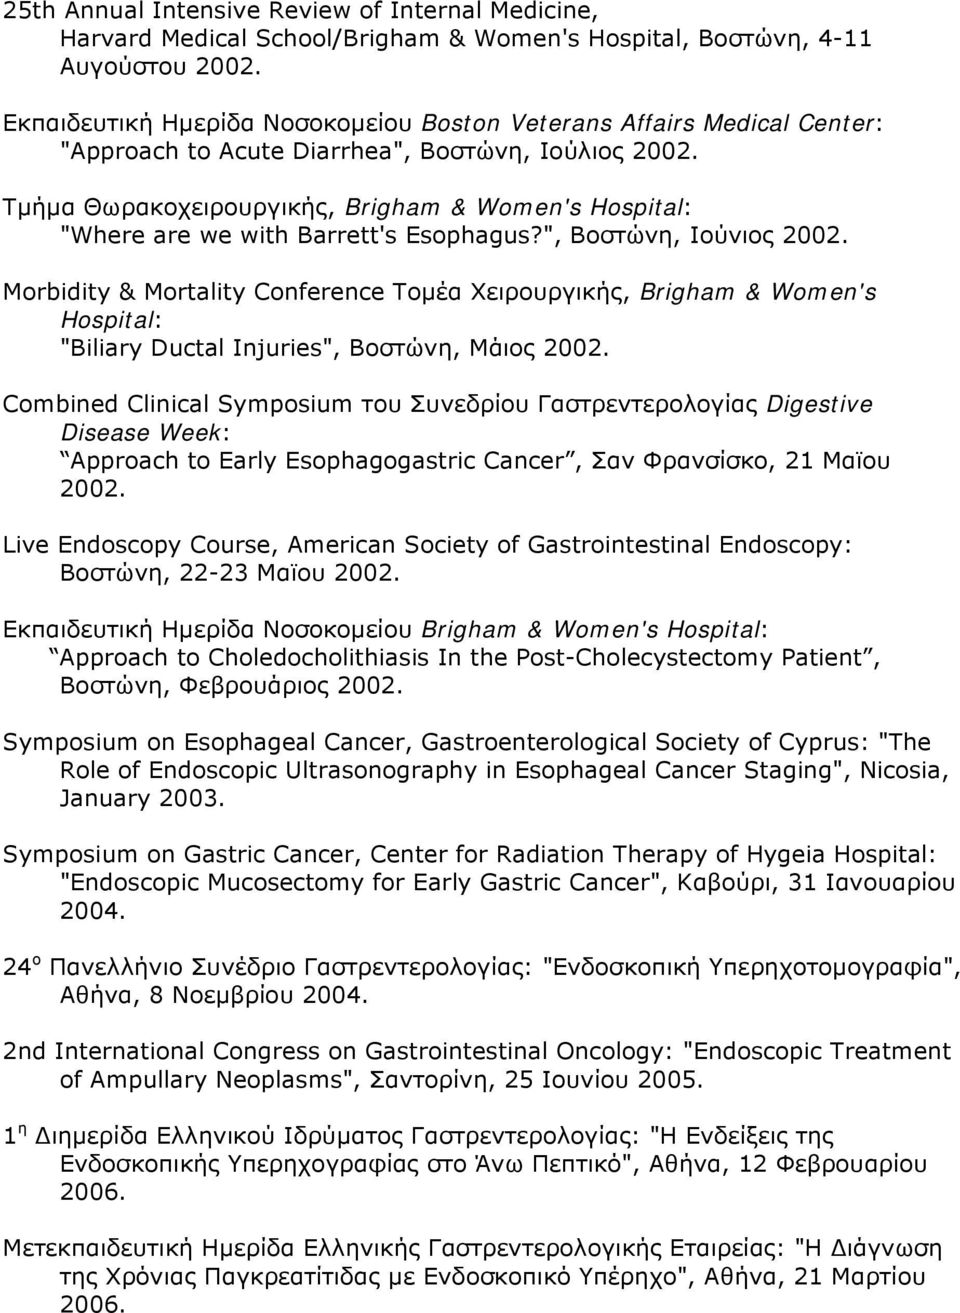 Τμήμα Θωρακοχειρουργικής, Brigham & Women's Hospital: "Where are we with Barrett's Esophagus?", Βοστώνη, Ιούνιος 2002.